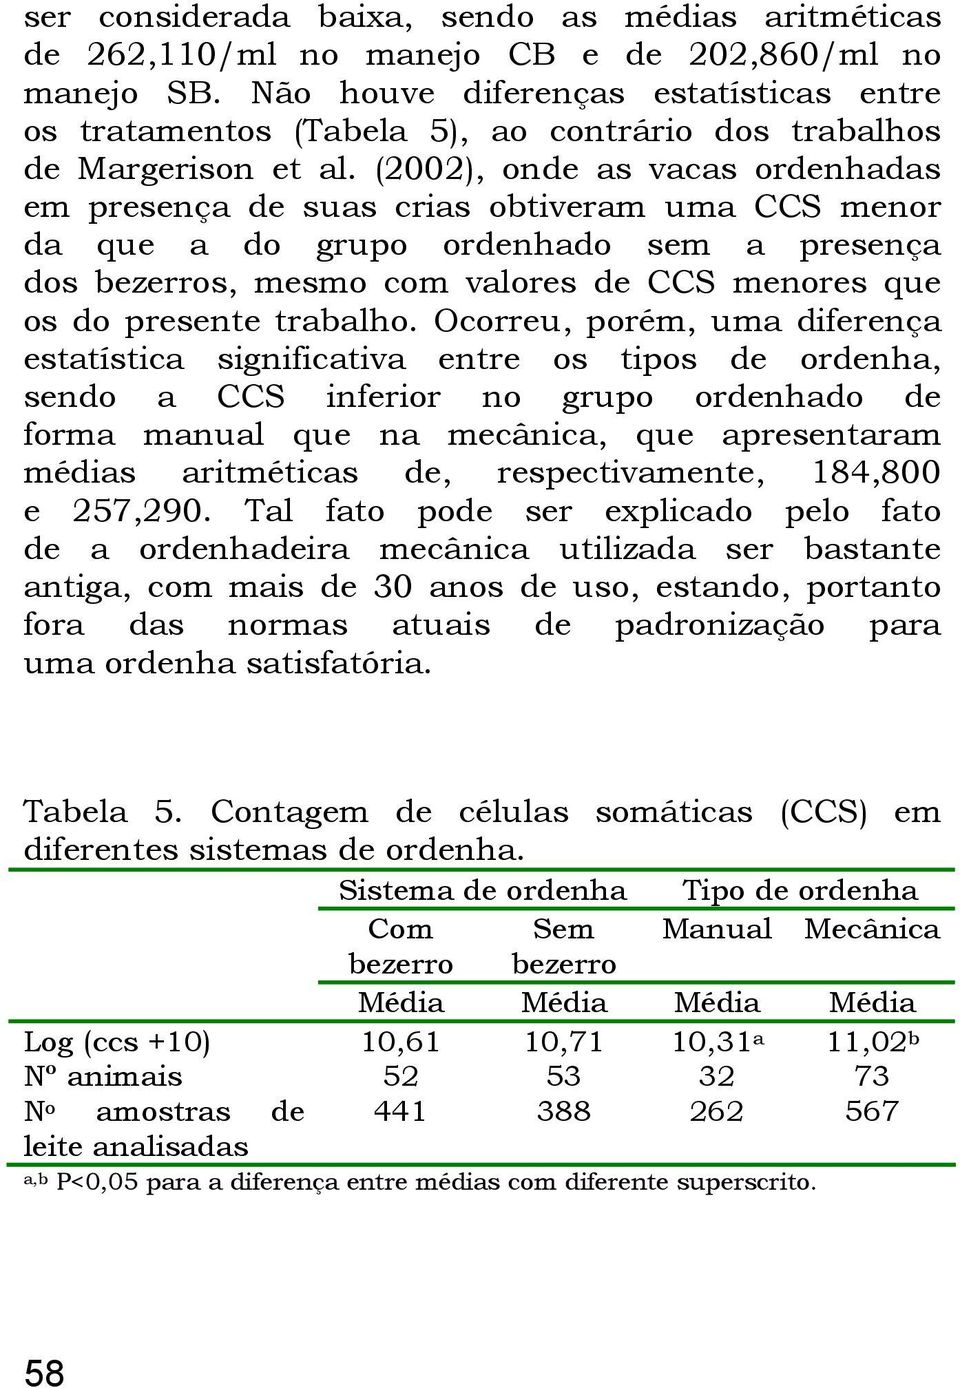 (2002), onde as vacas ordenhadas em presença de suas crias obtiveram uma CCS menor da que a do grupo ordenhado sem a presença dos bezerros, mesmo com valores de CCS menores que os do presente